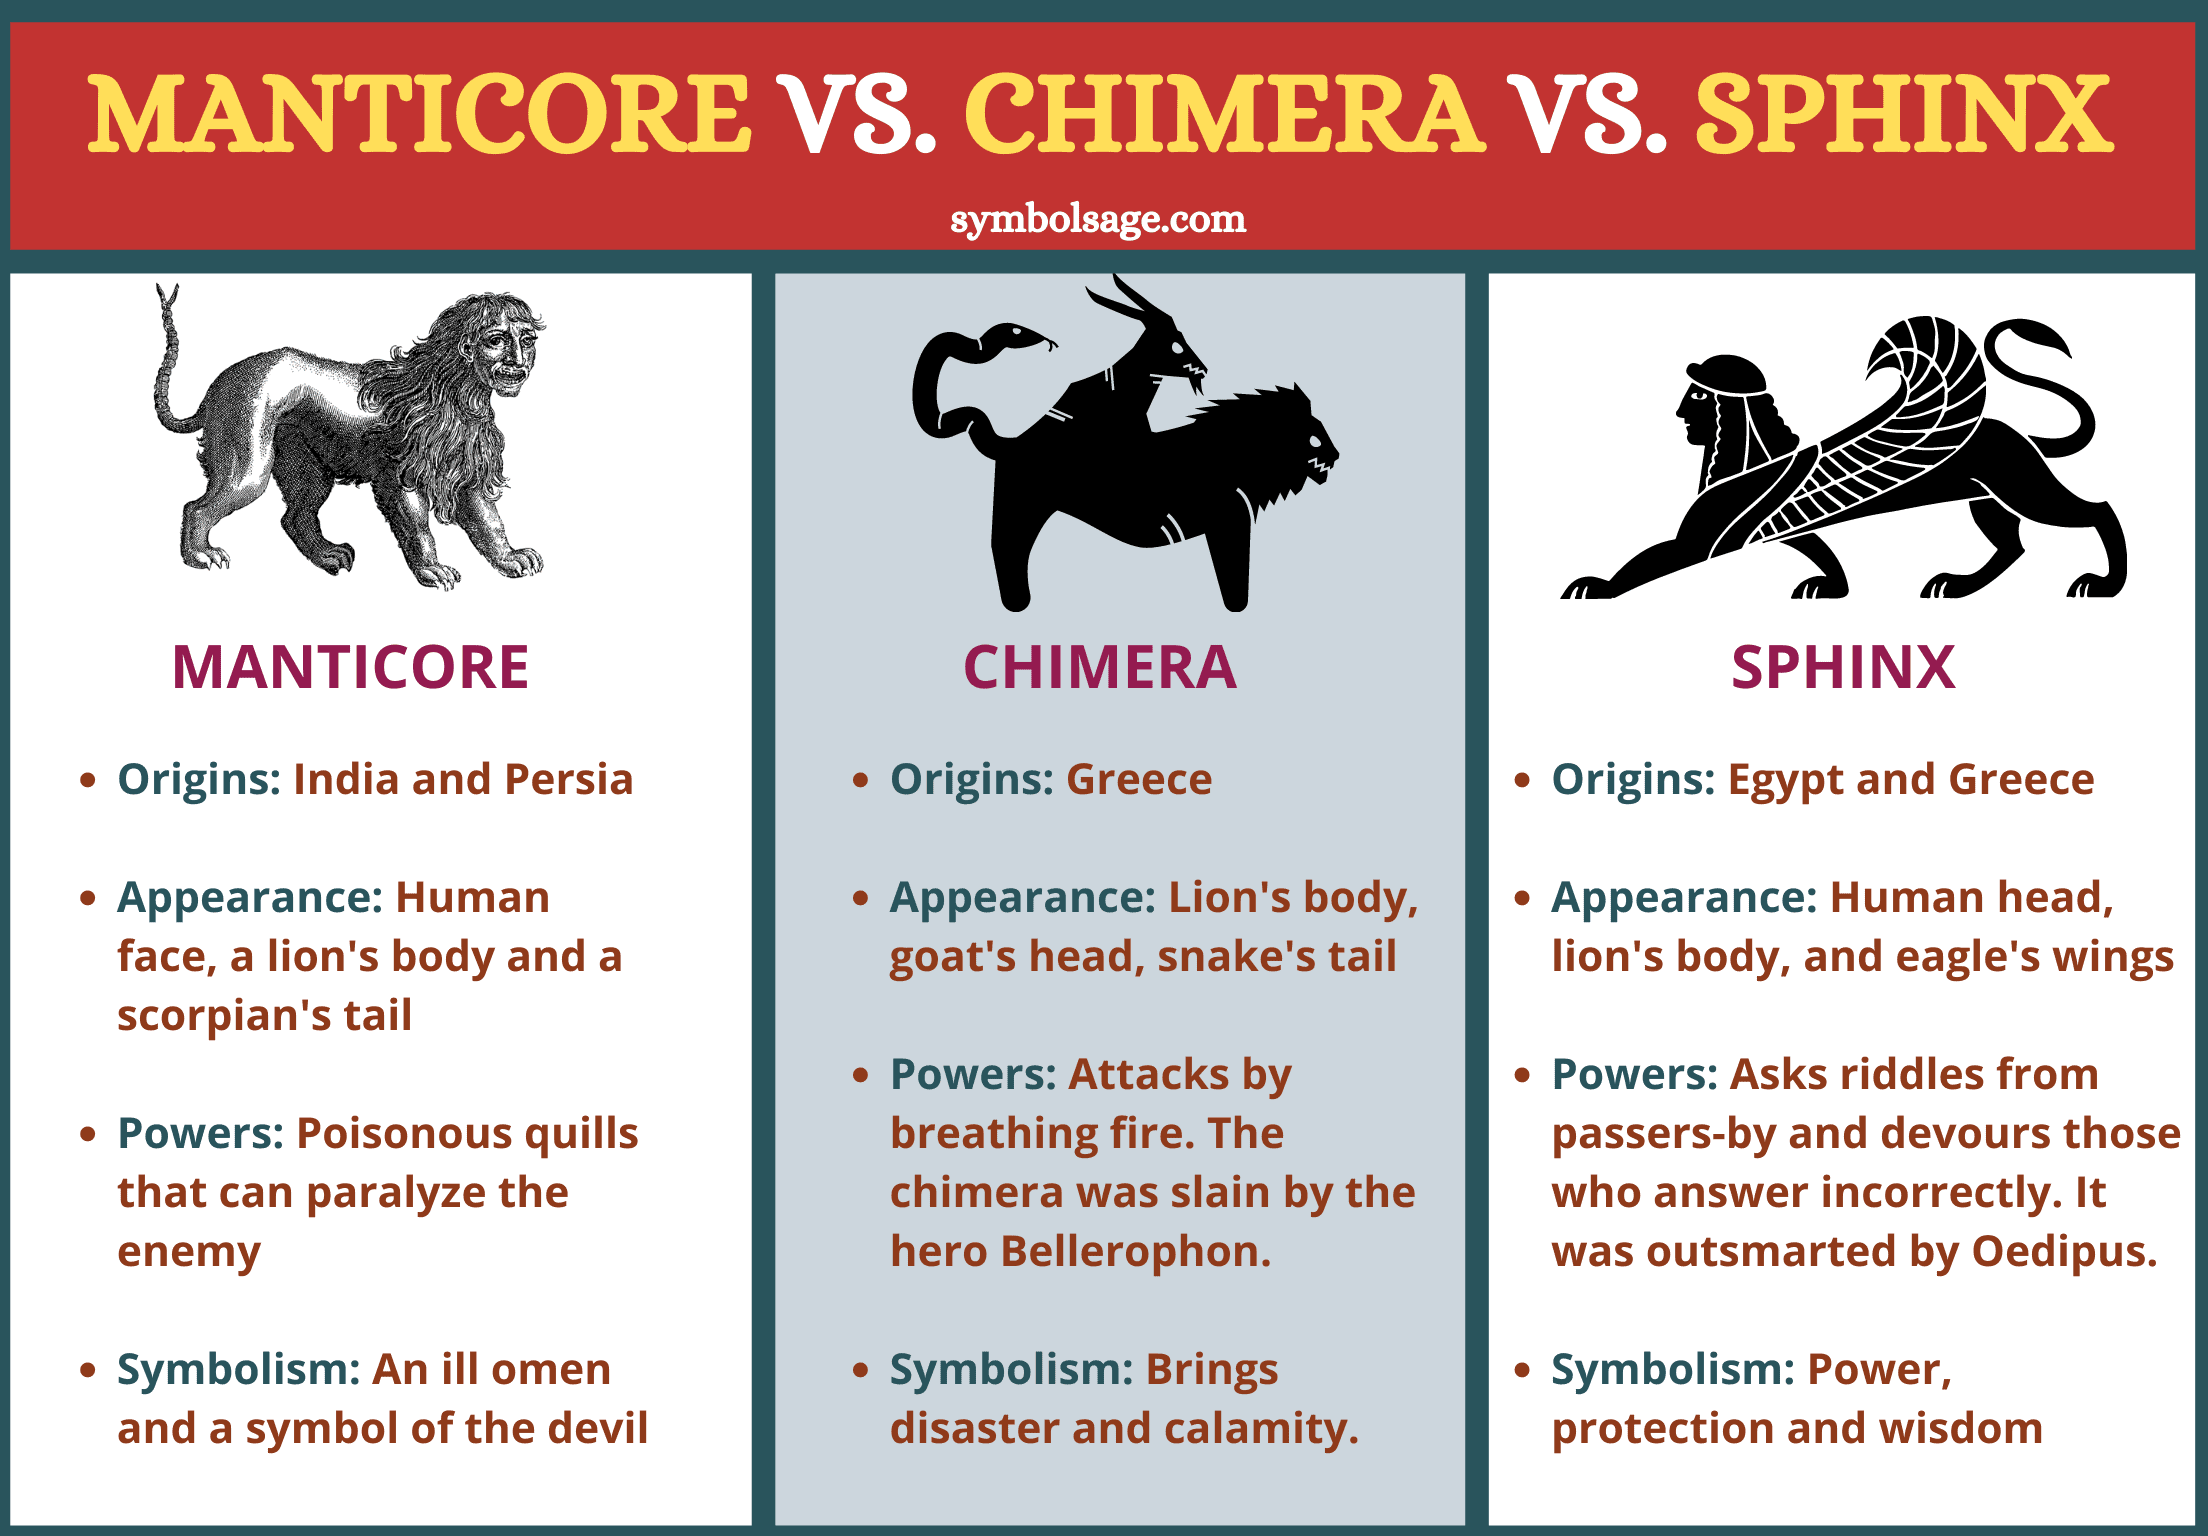 Manticore vs chimera vs sphinx